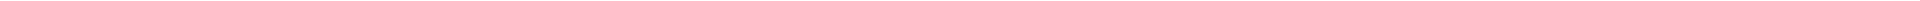 Лечение кариеса зубов - цены в Астане, Алматы, Атырау, Усть-Каменогорск, Уральск, Кокшетау в Казахстане, фото 21